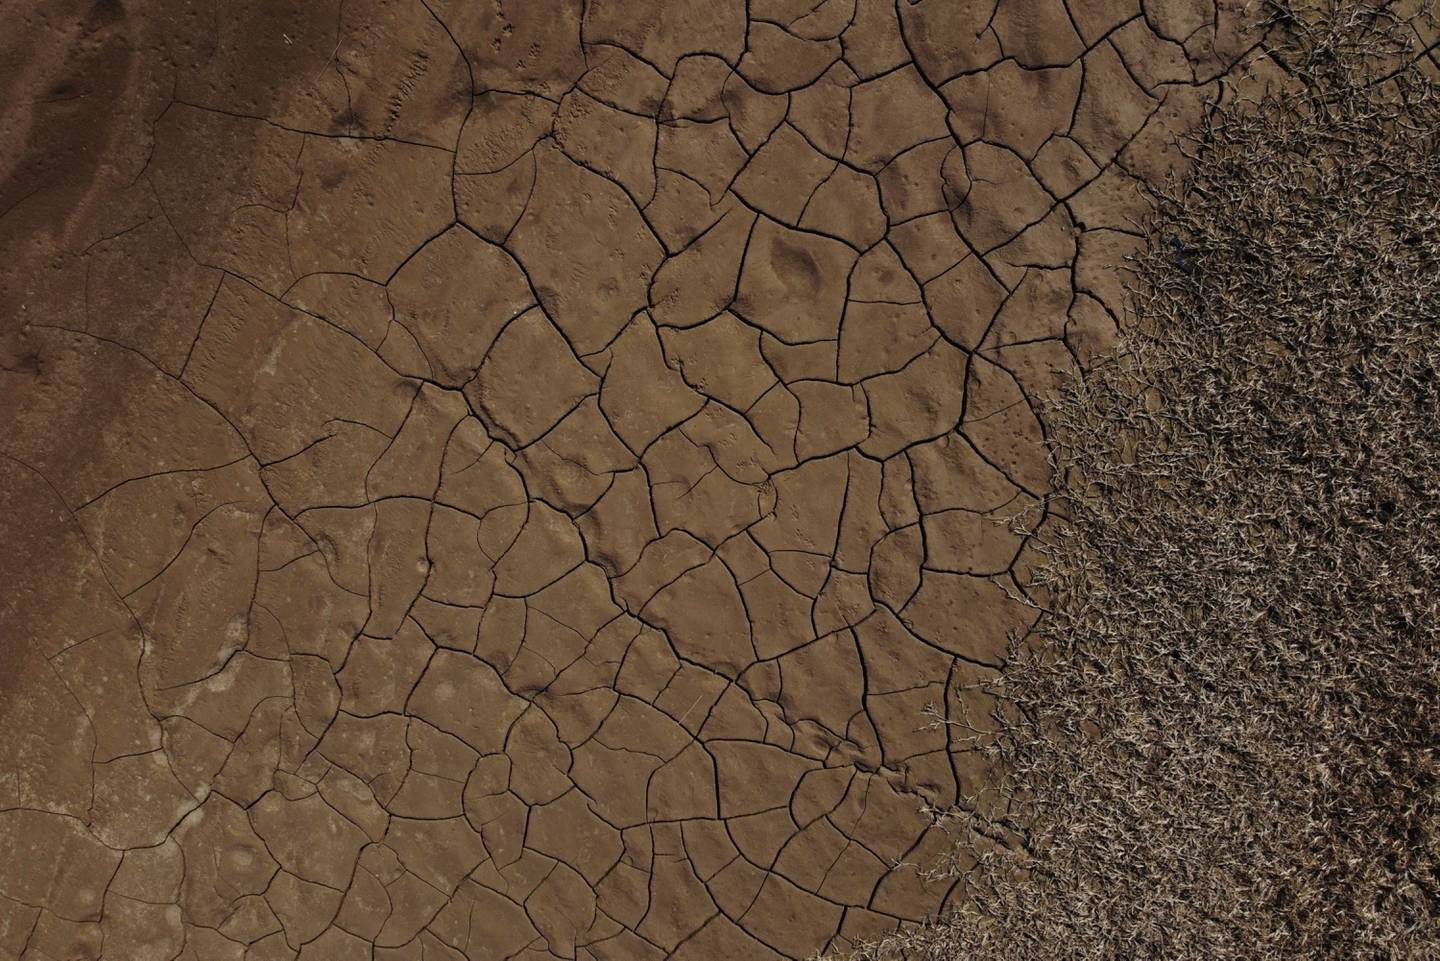 Suelo seco y agrietado a lo largo del río Paraná durante la sequía en Rosario.